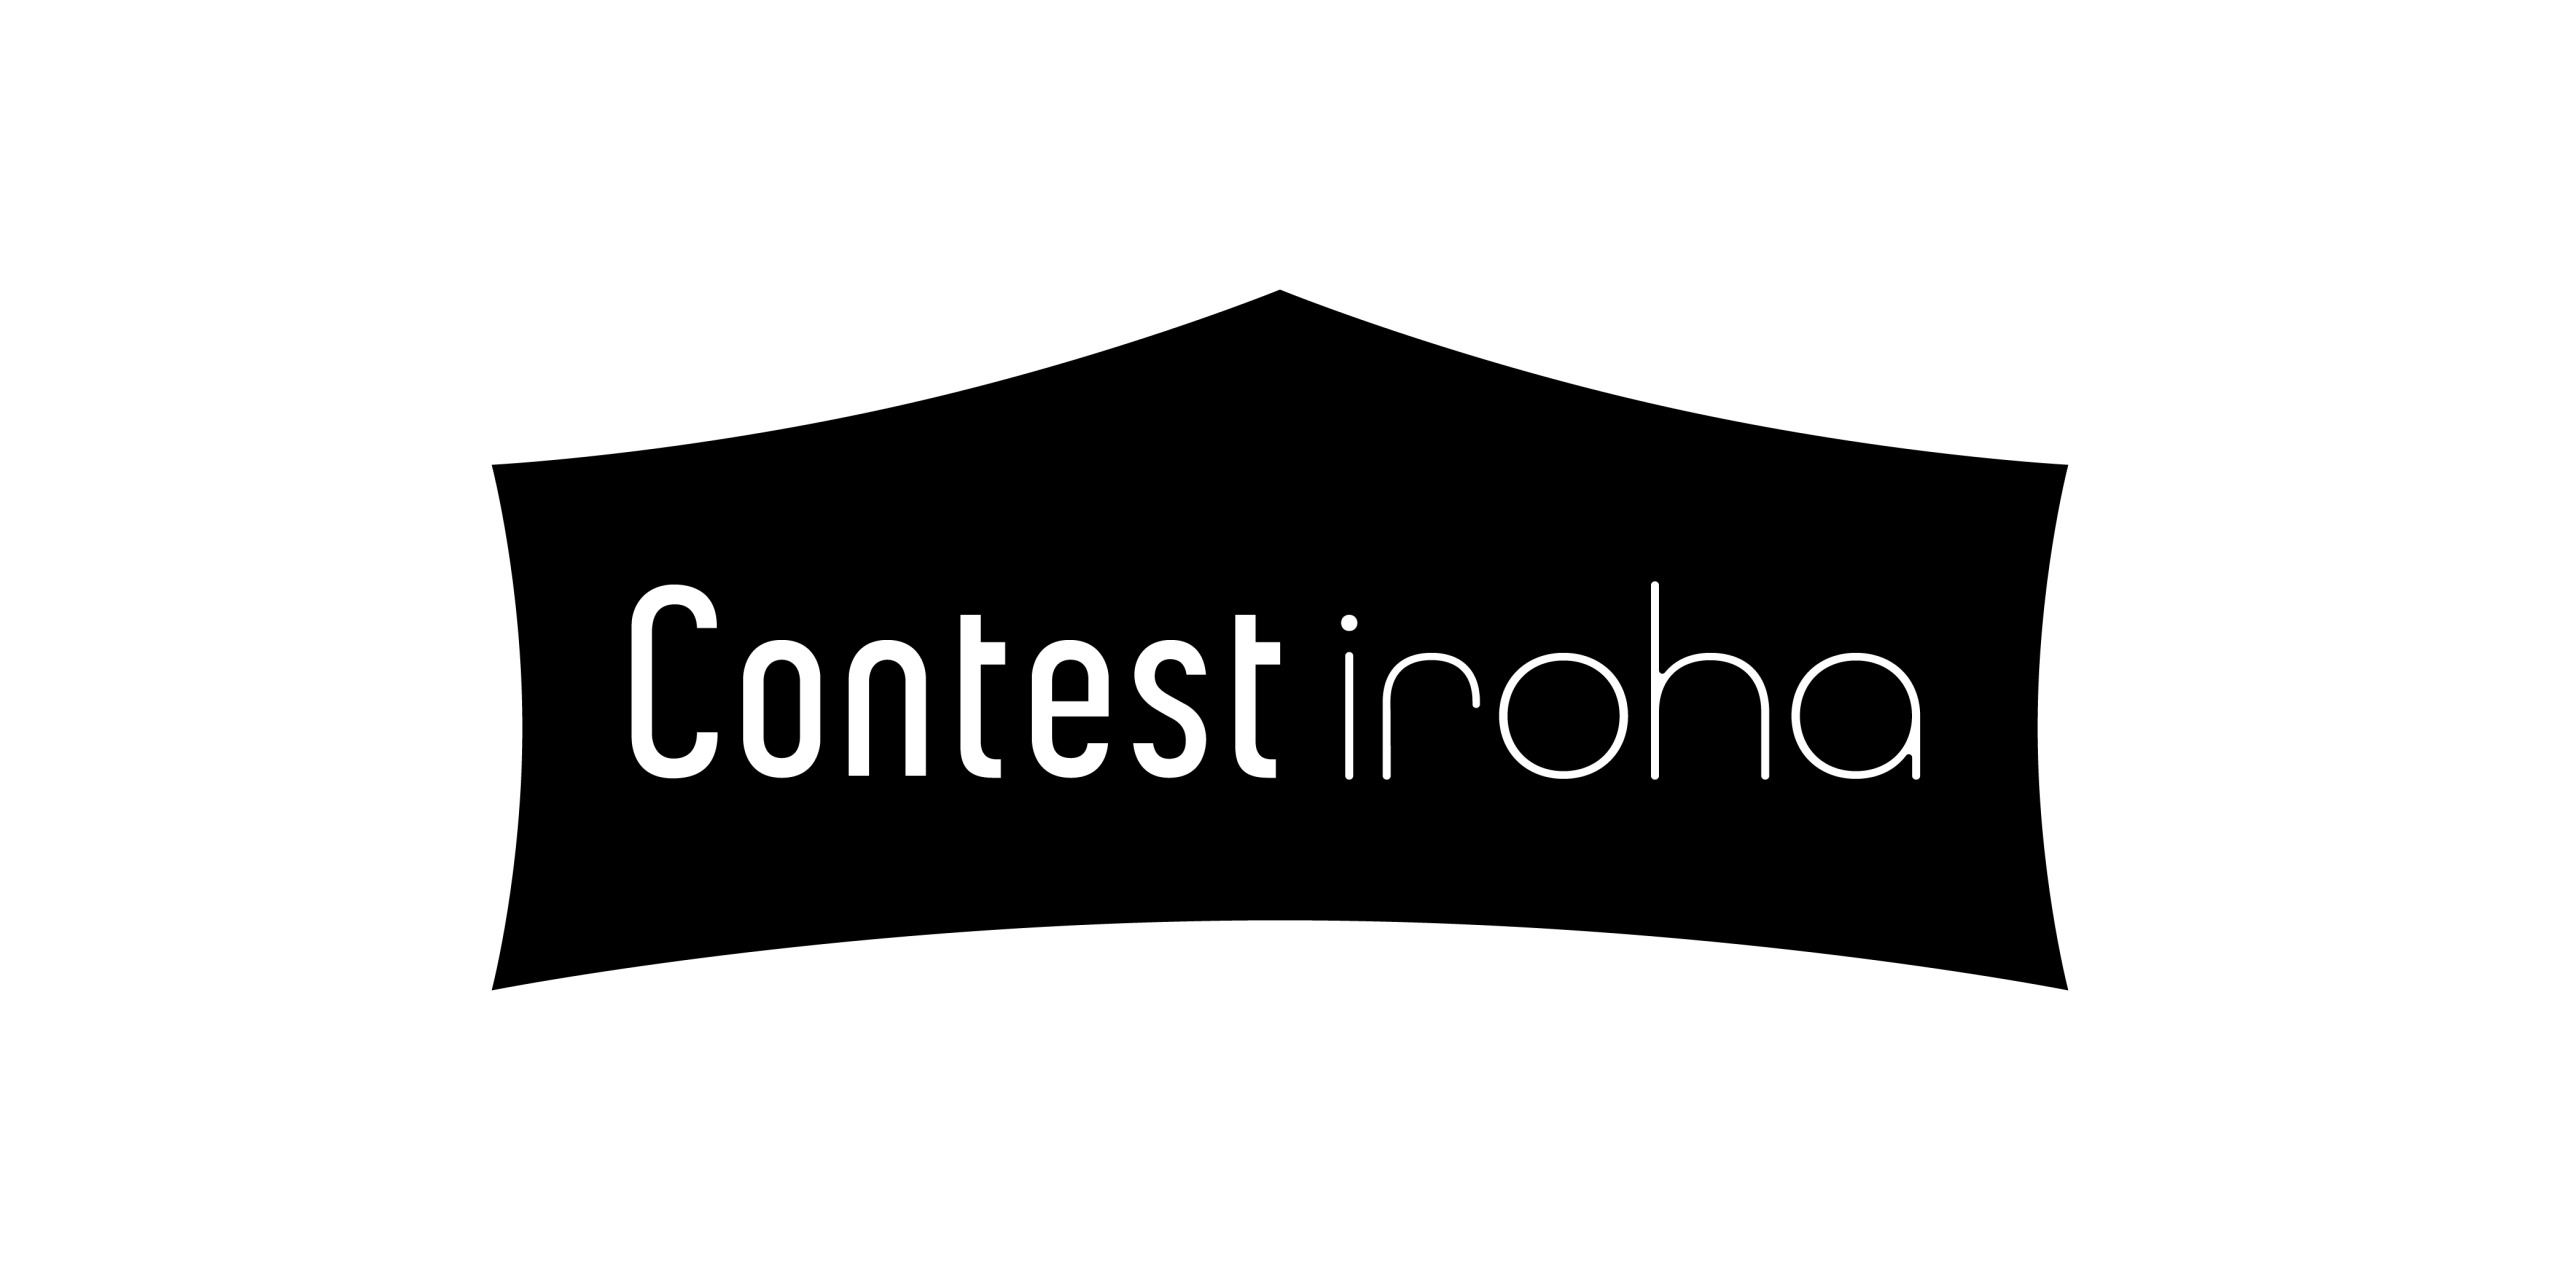 「Contest iroha -コンテスト相談所-」のロゴタイプ